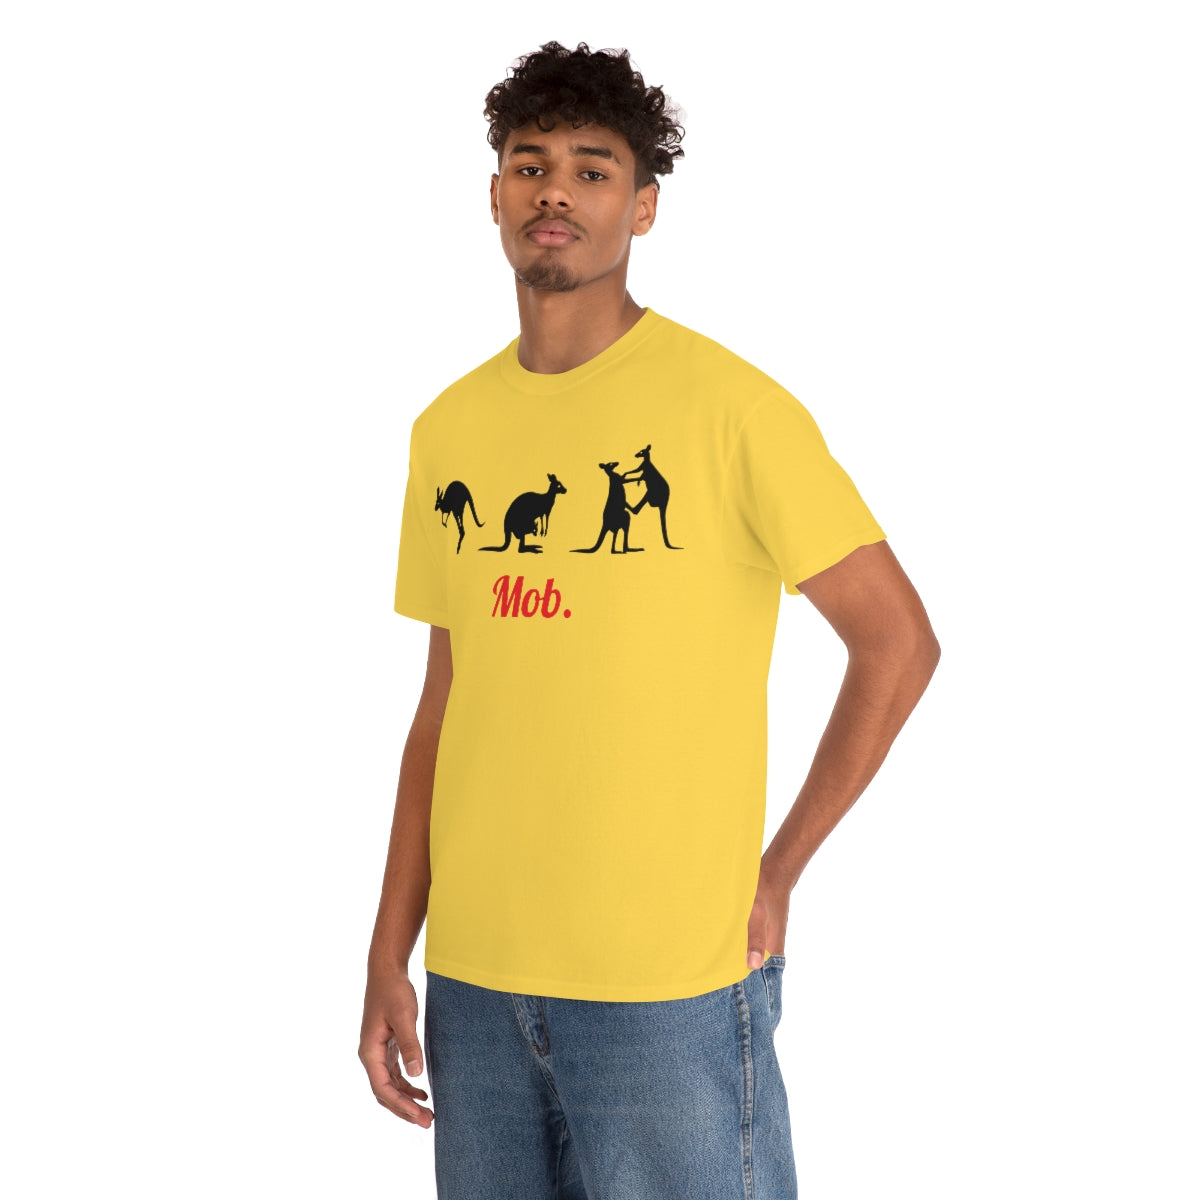 Mob of Kangaroos T-shirt